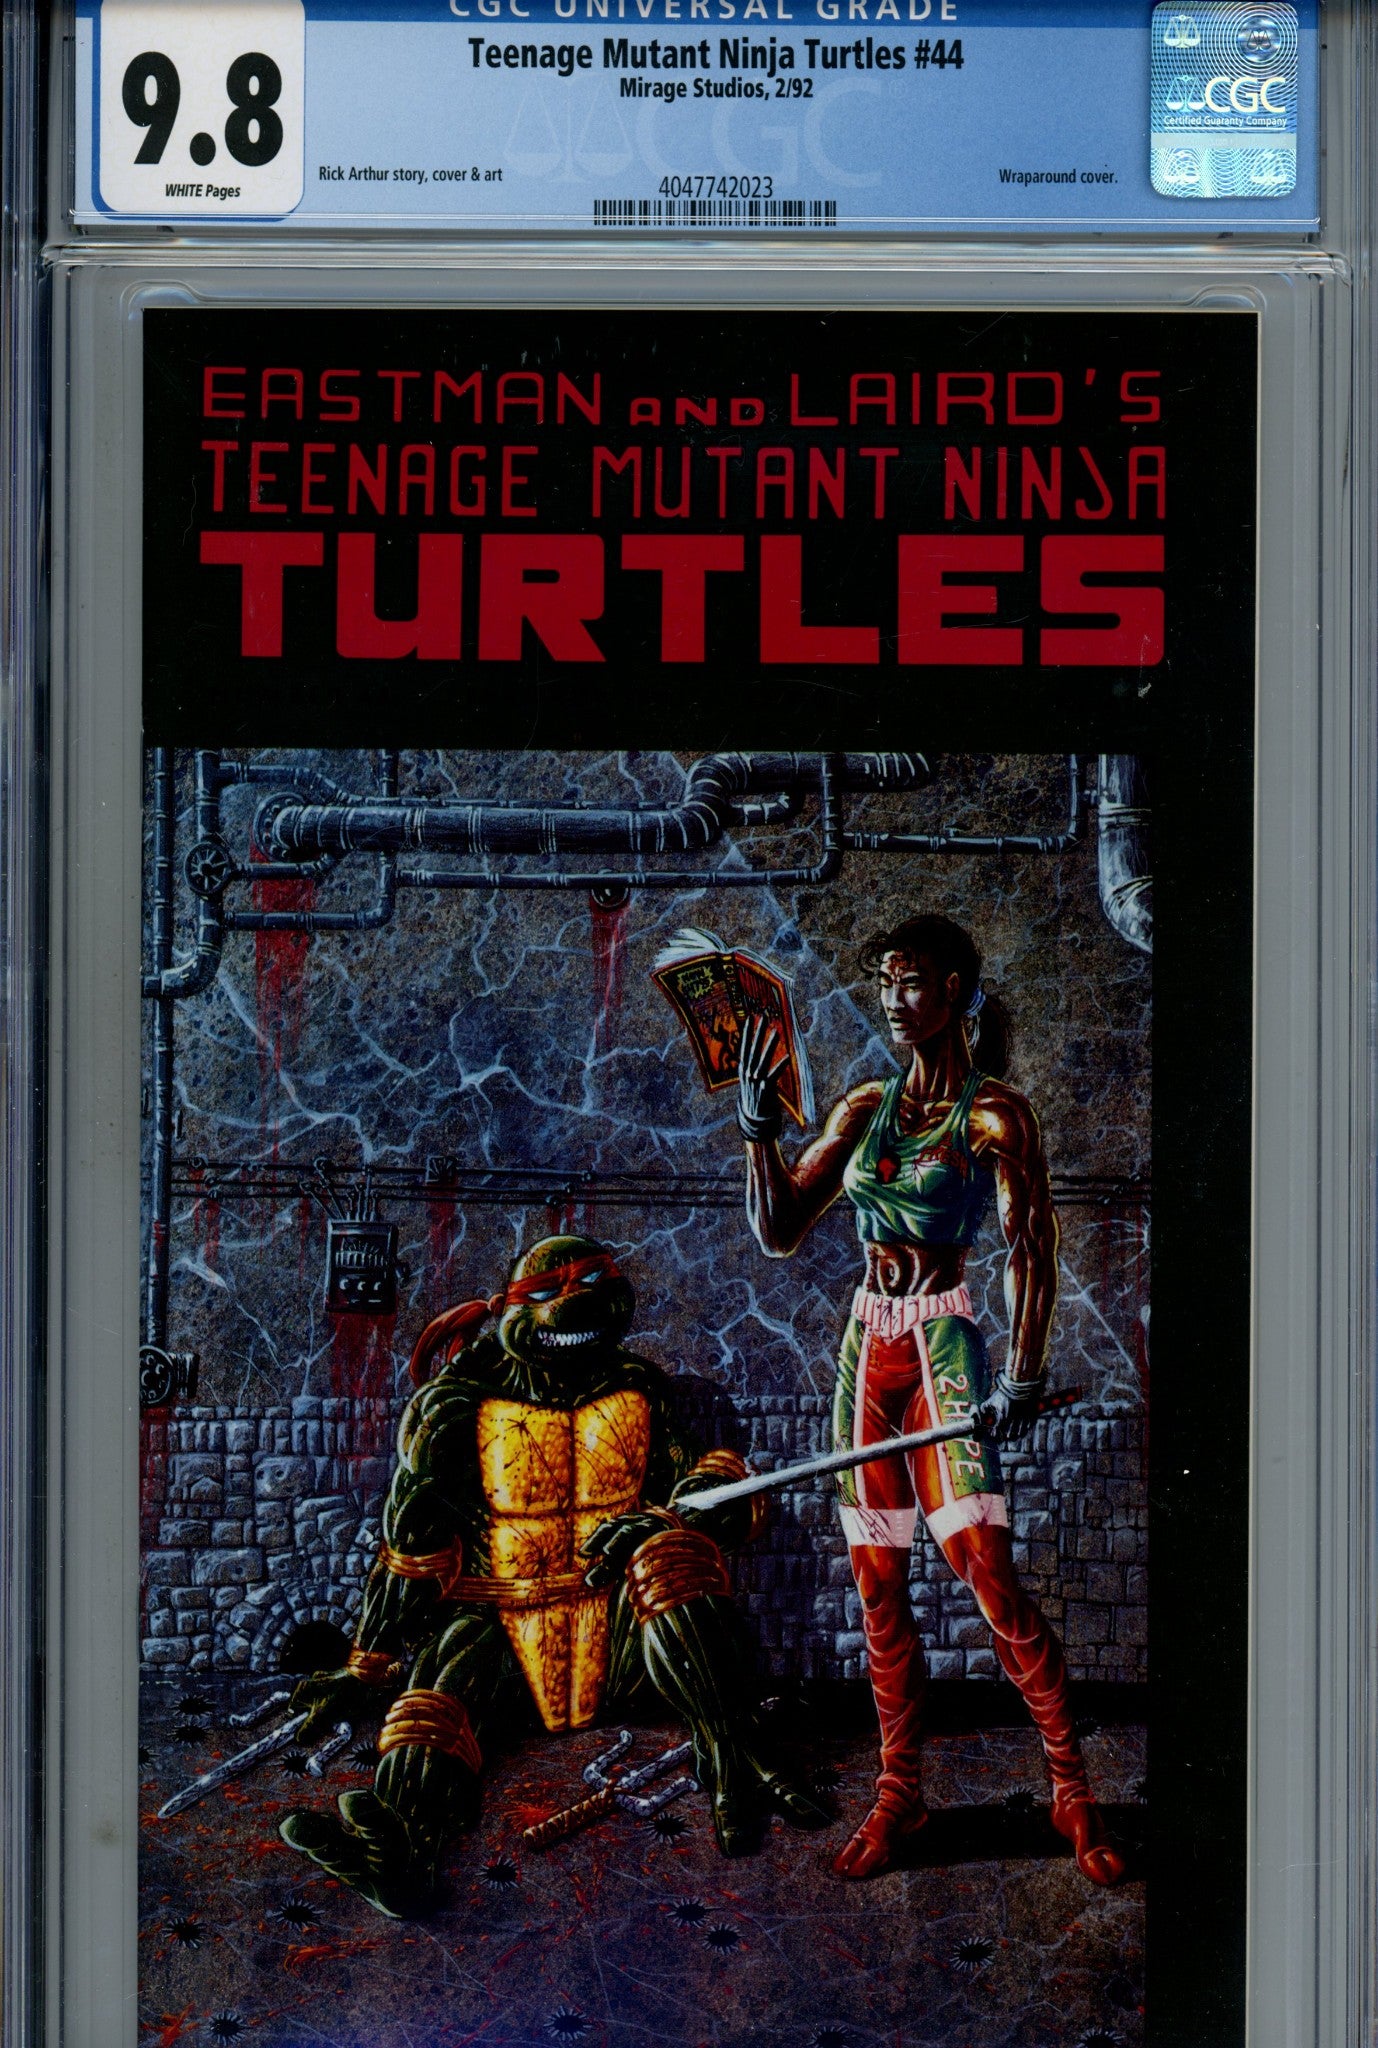 Teenage Mutant Ninja Turtles Vol 1 44 CGC 9.8 (1992)